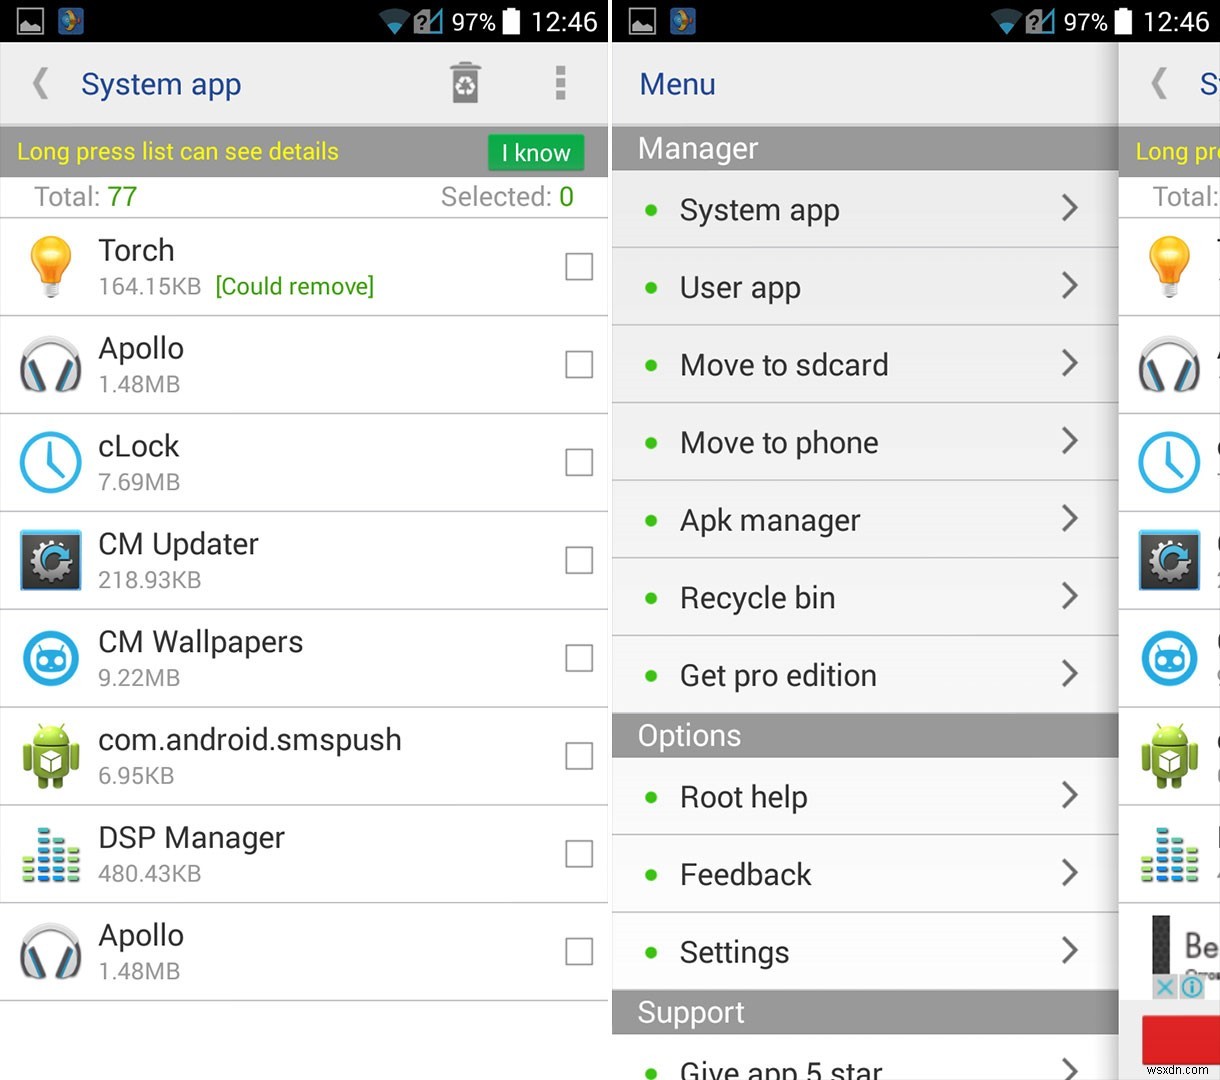 루팅된 Android를 위한 상위 11개 앱 